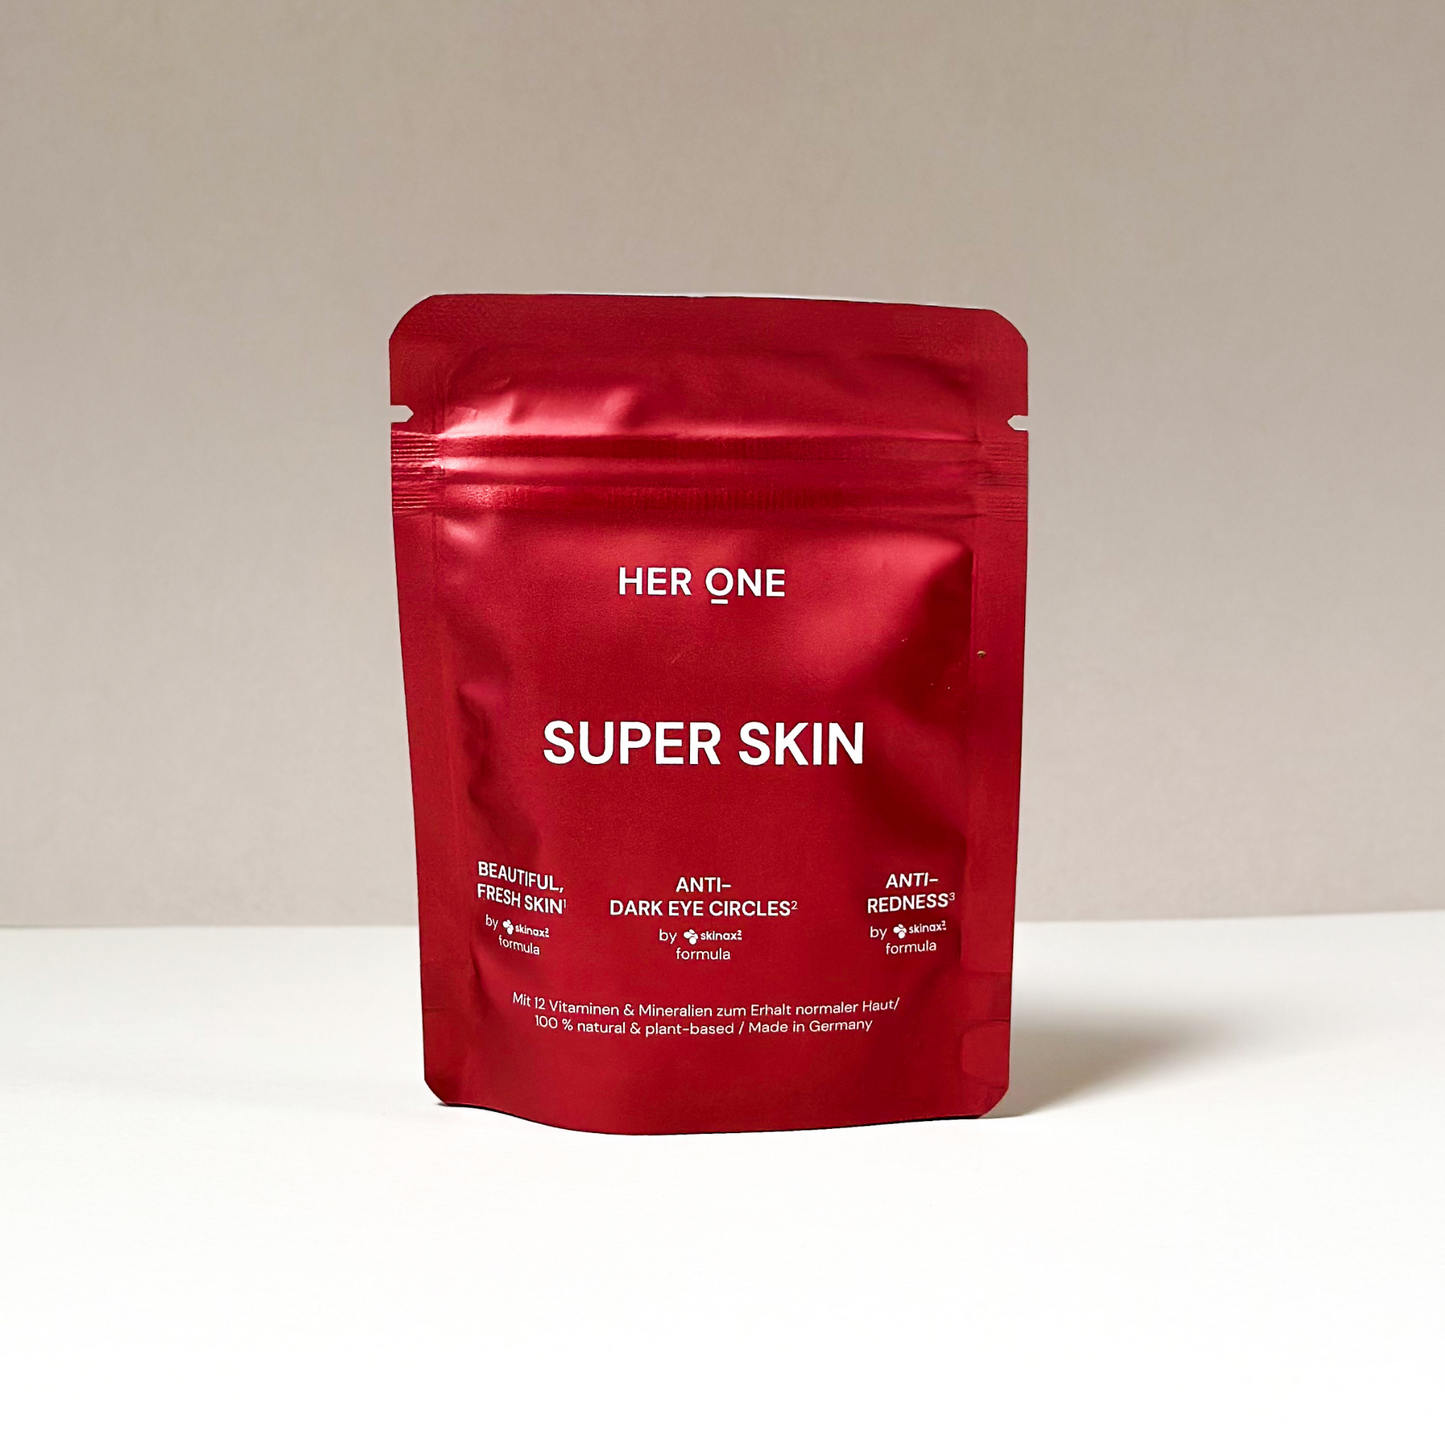 SUPER SKIN (mit OPC & Antioxidantien)